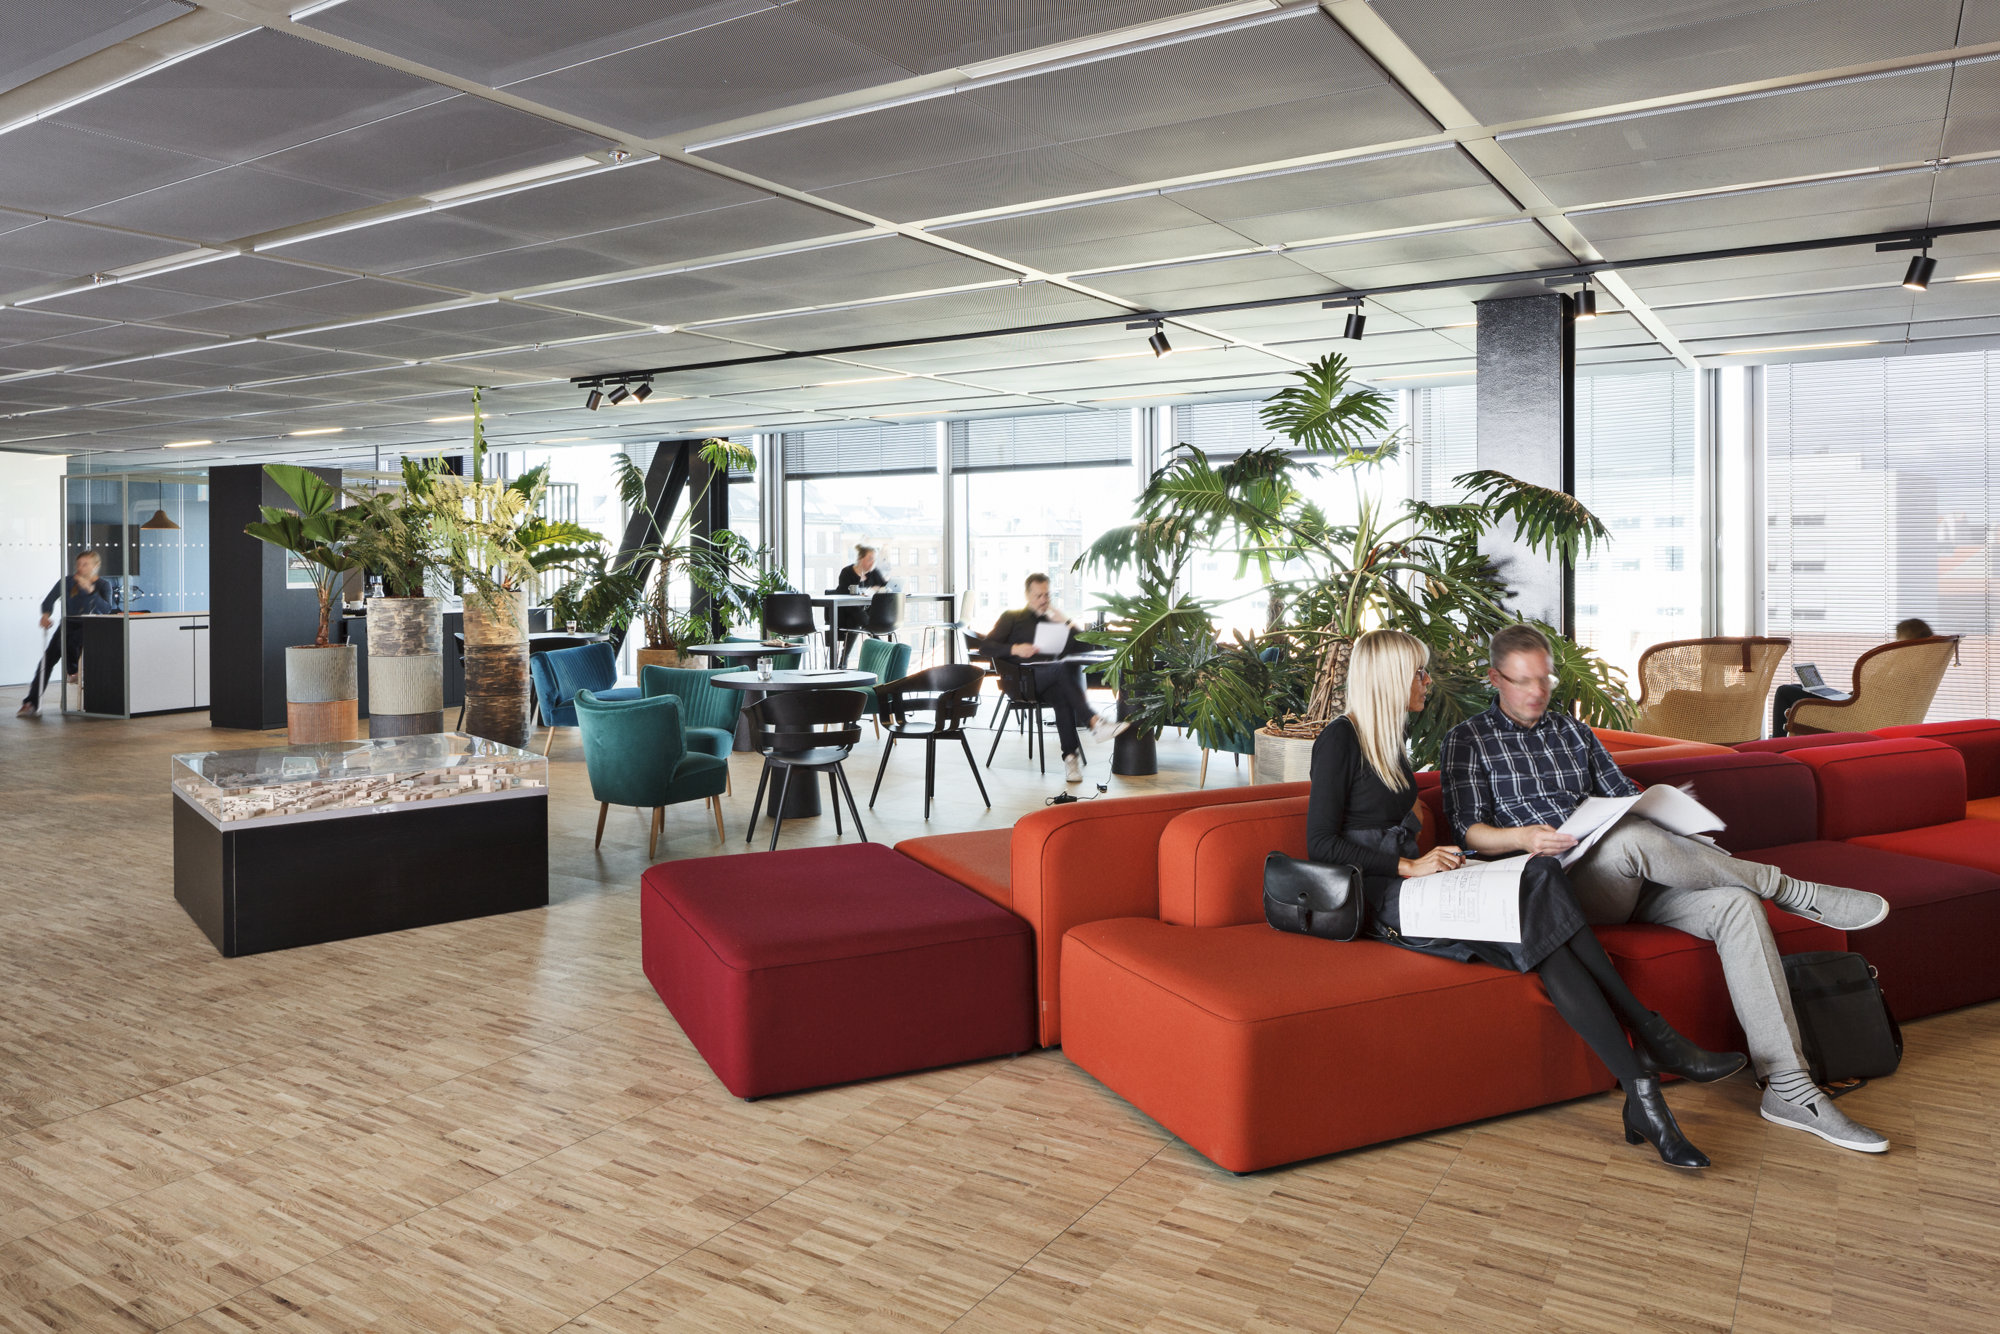 图片[4]|BLOXHUB协同办公办公室-哥本哈根|ART-Arrakis | 建筑室内设计的创新与灵感